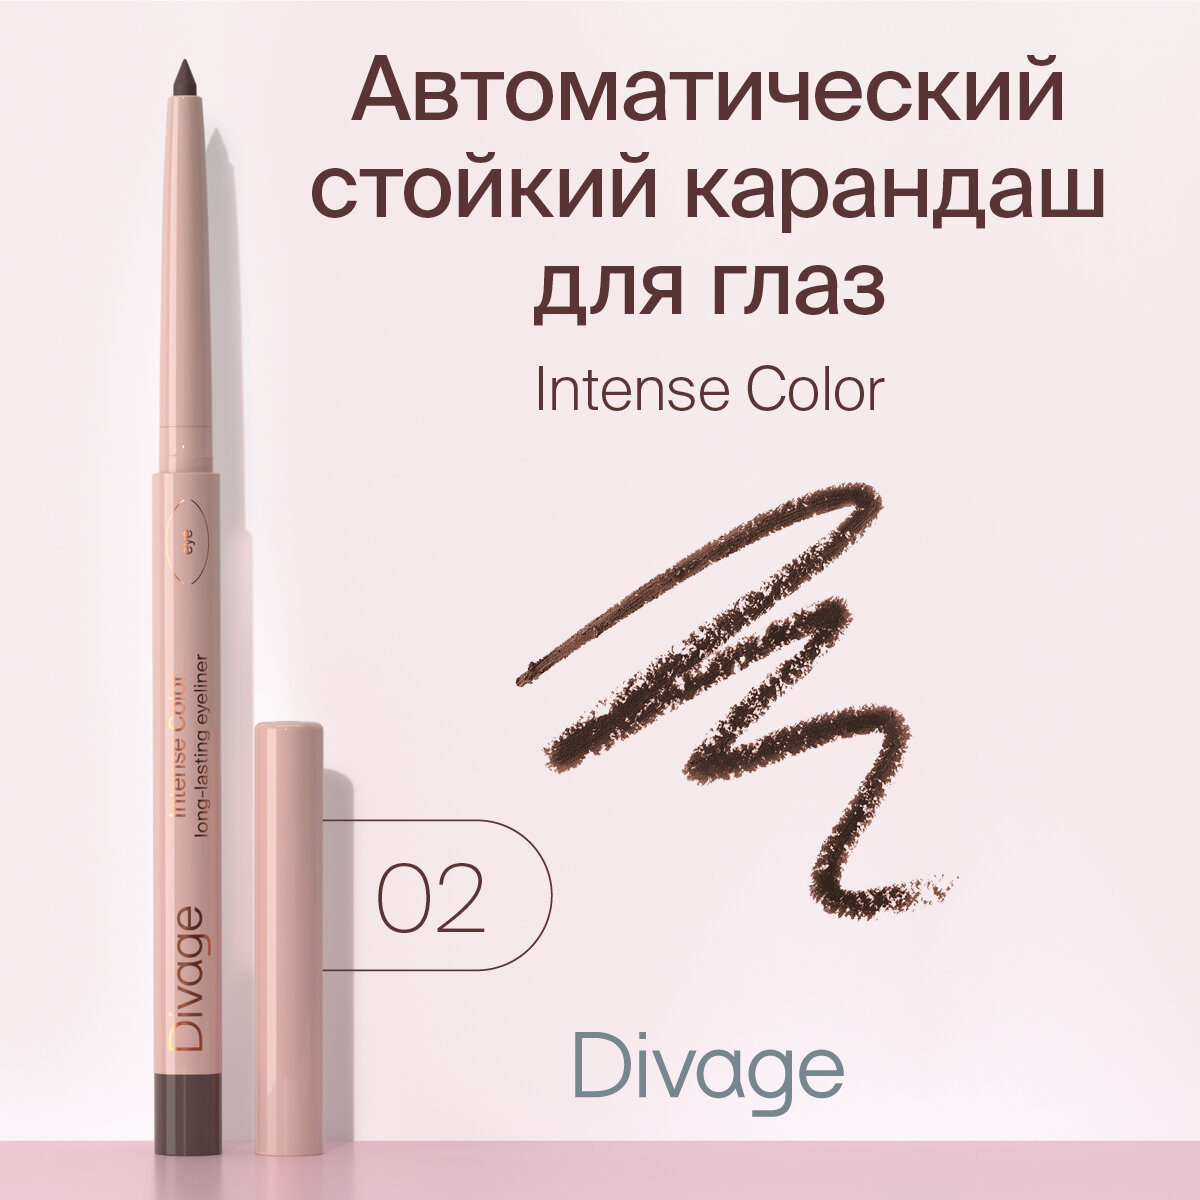 Divage Карандаш для глаз автоматический стойкий Intense Color тон 02 коричневый